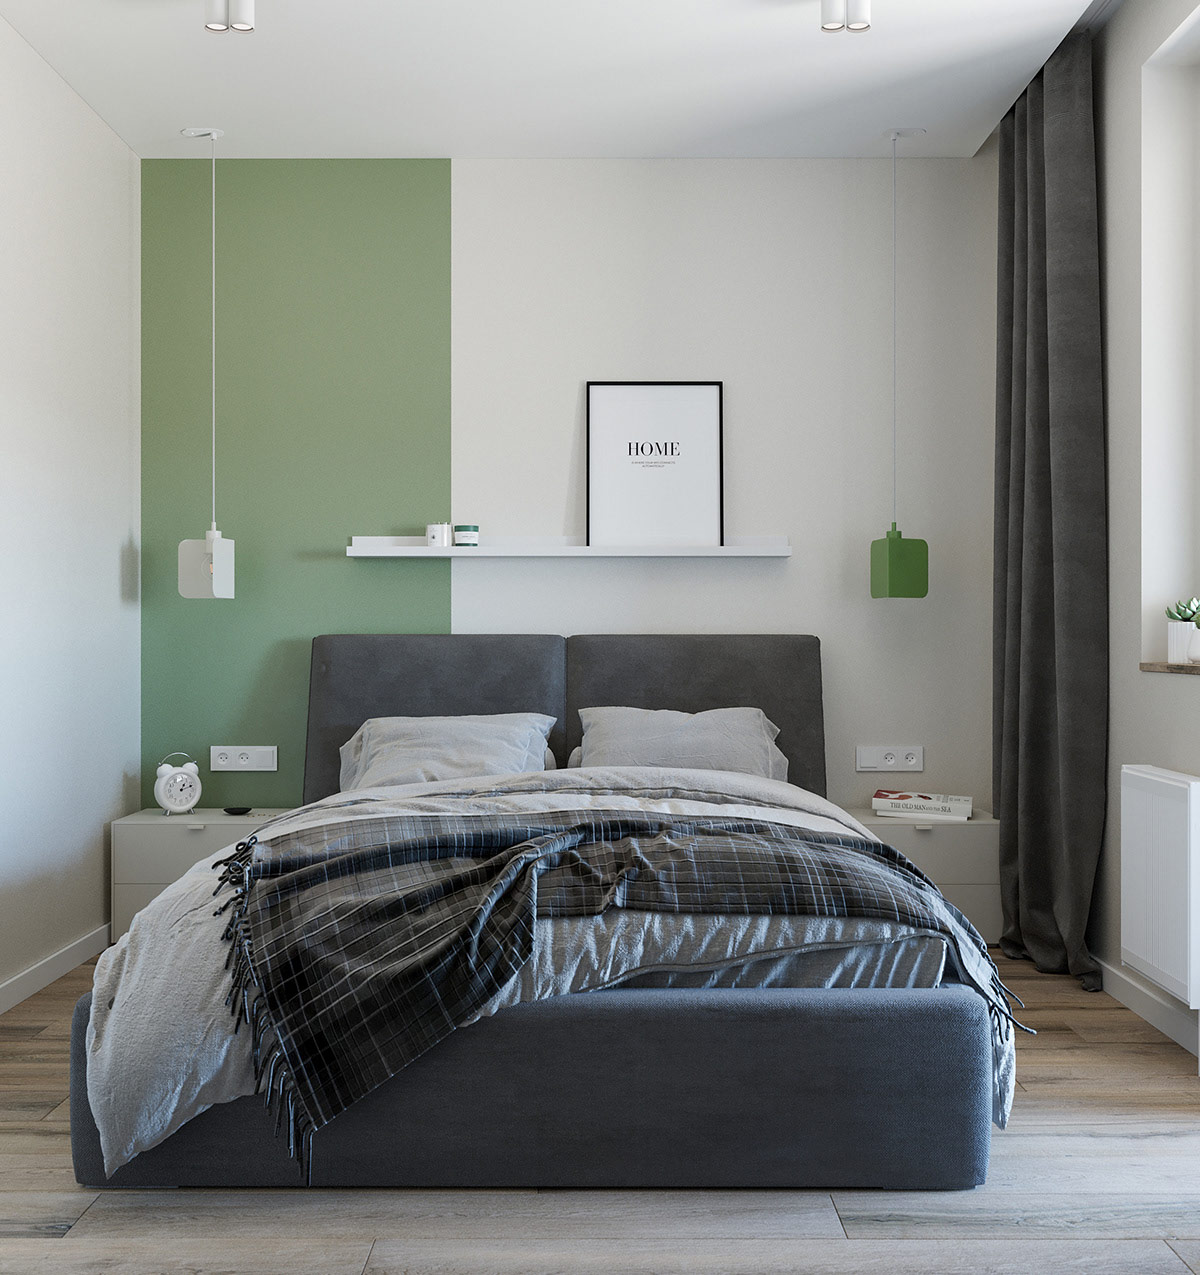 Với phòng ngủ, tông màu trắng và xanh lá tiếp tục kết hợp ăn ý, mang đến cái nhìn hiện đại, tràn đầy năng lượng tích cực.